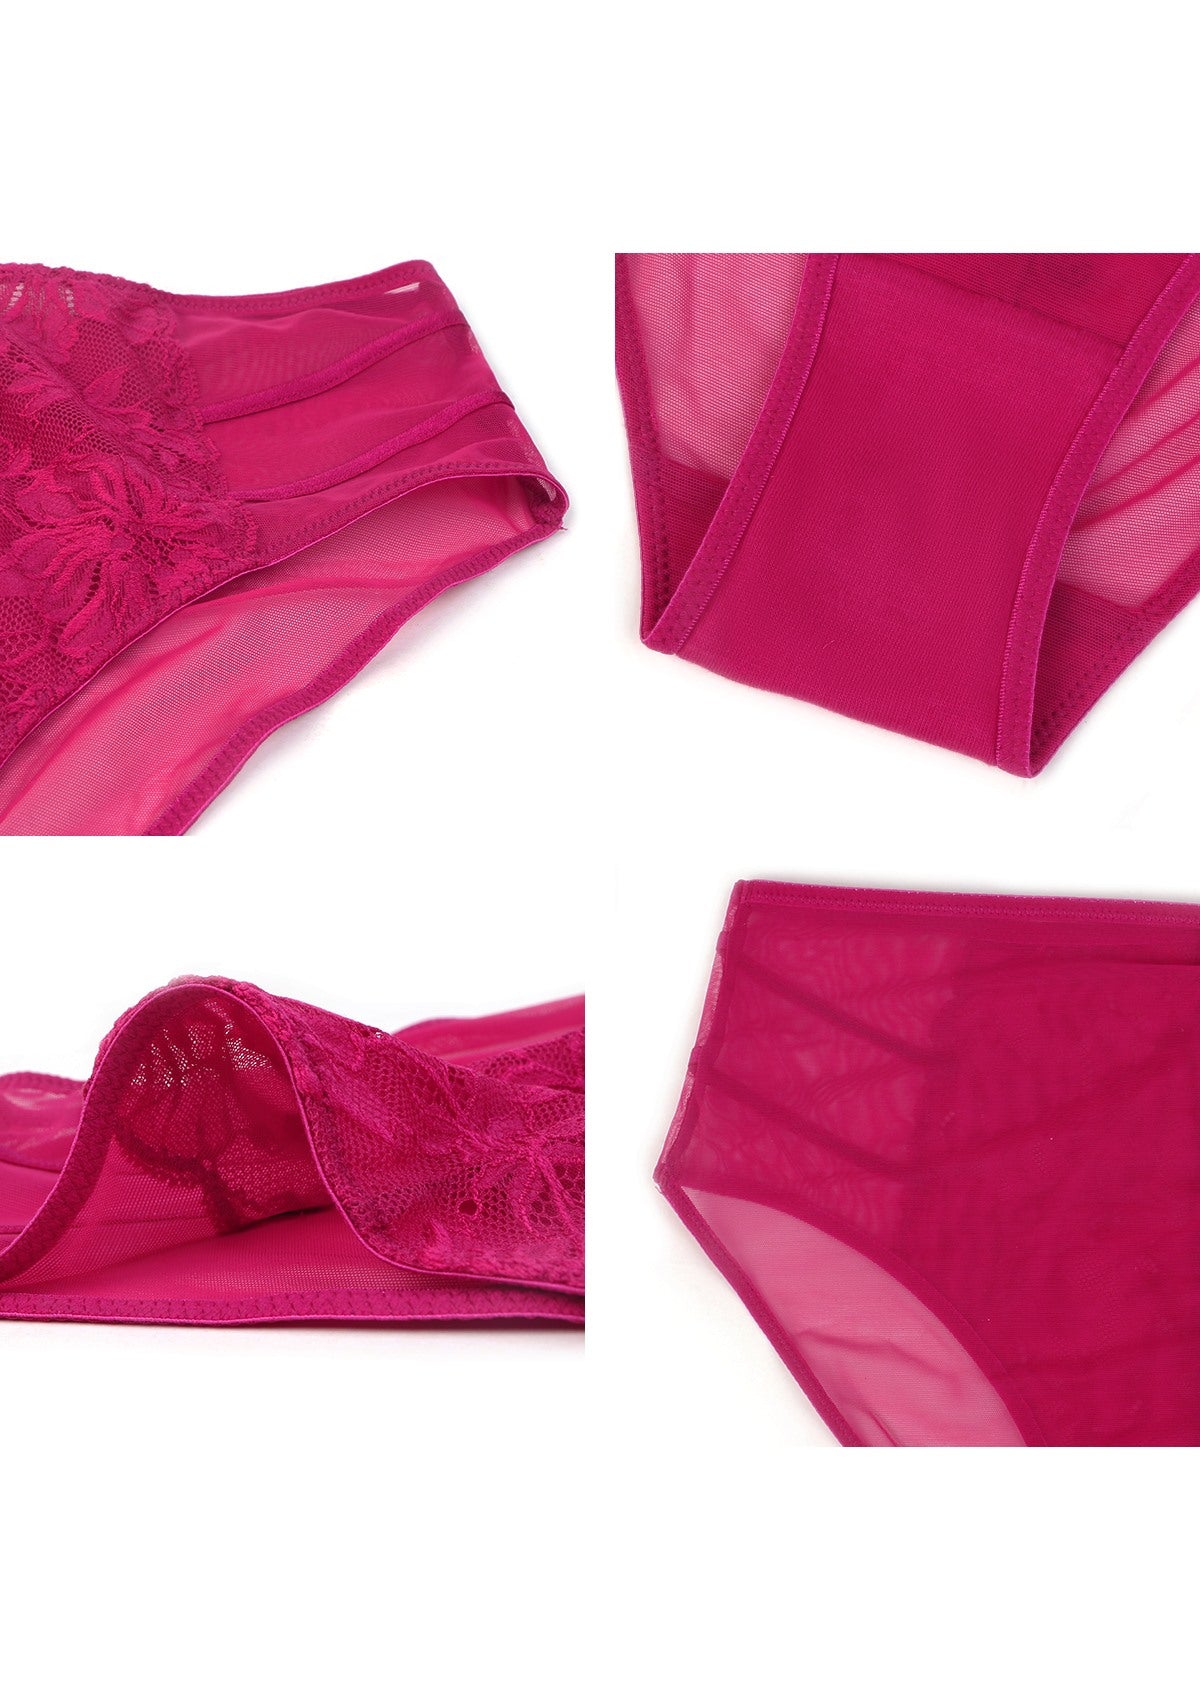 HSIA Pretty In Petals Mid-Rise Sexy Lace Everyday Underwear  - L / Bikini / Red